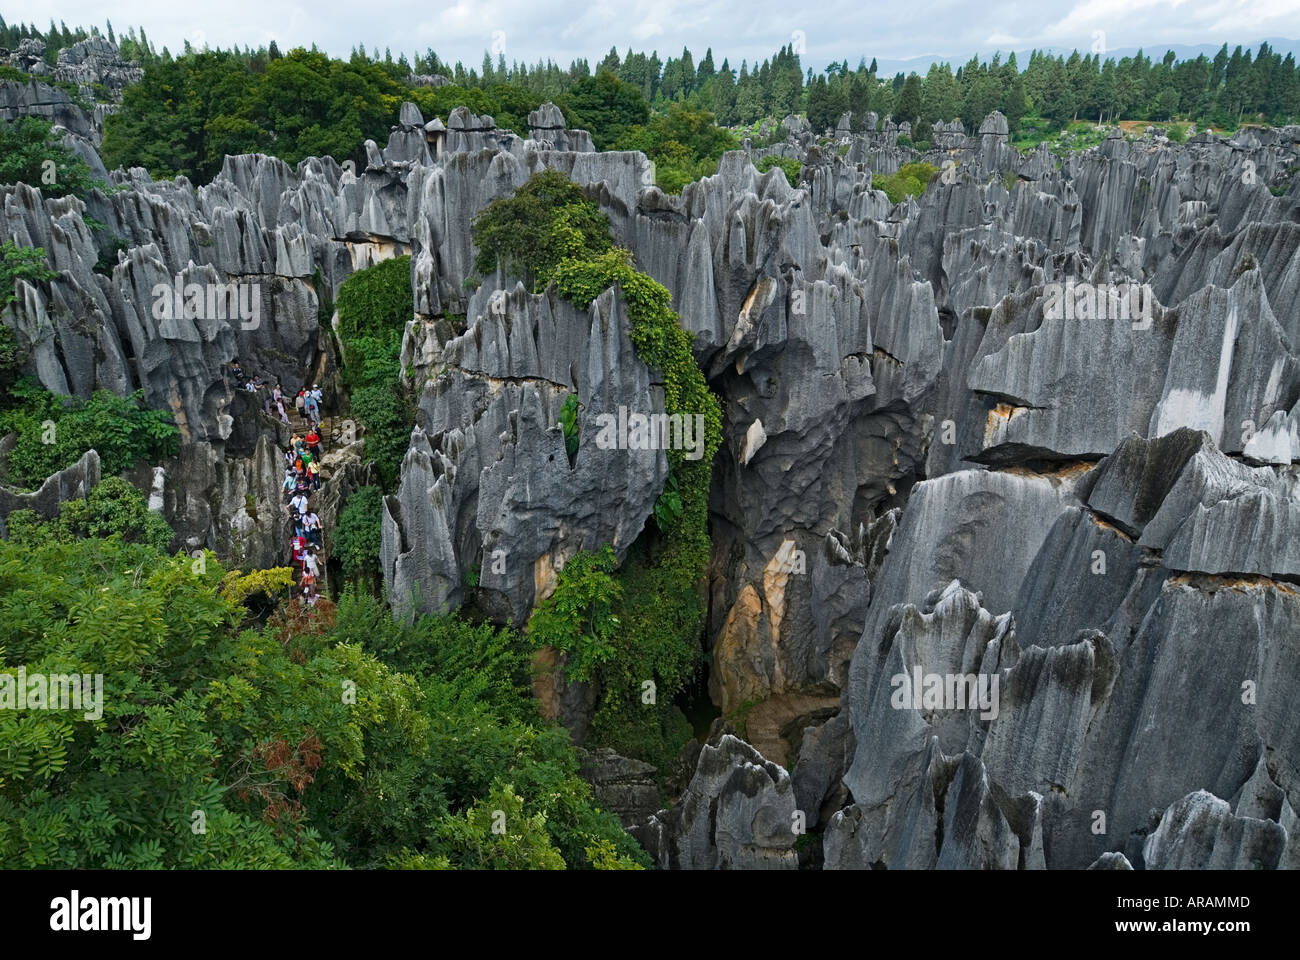 Besucher schlängeln sich durch hoch aufragenden Karst Limesone Formationen, die der Stein Wald Shilin Provinz Yunnan China bilden Stockfoto